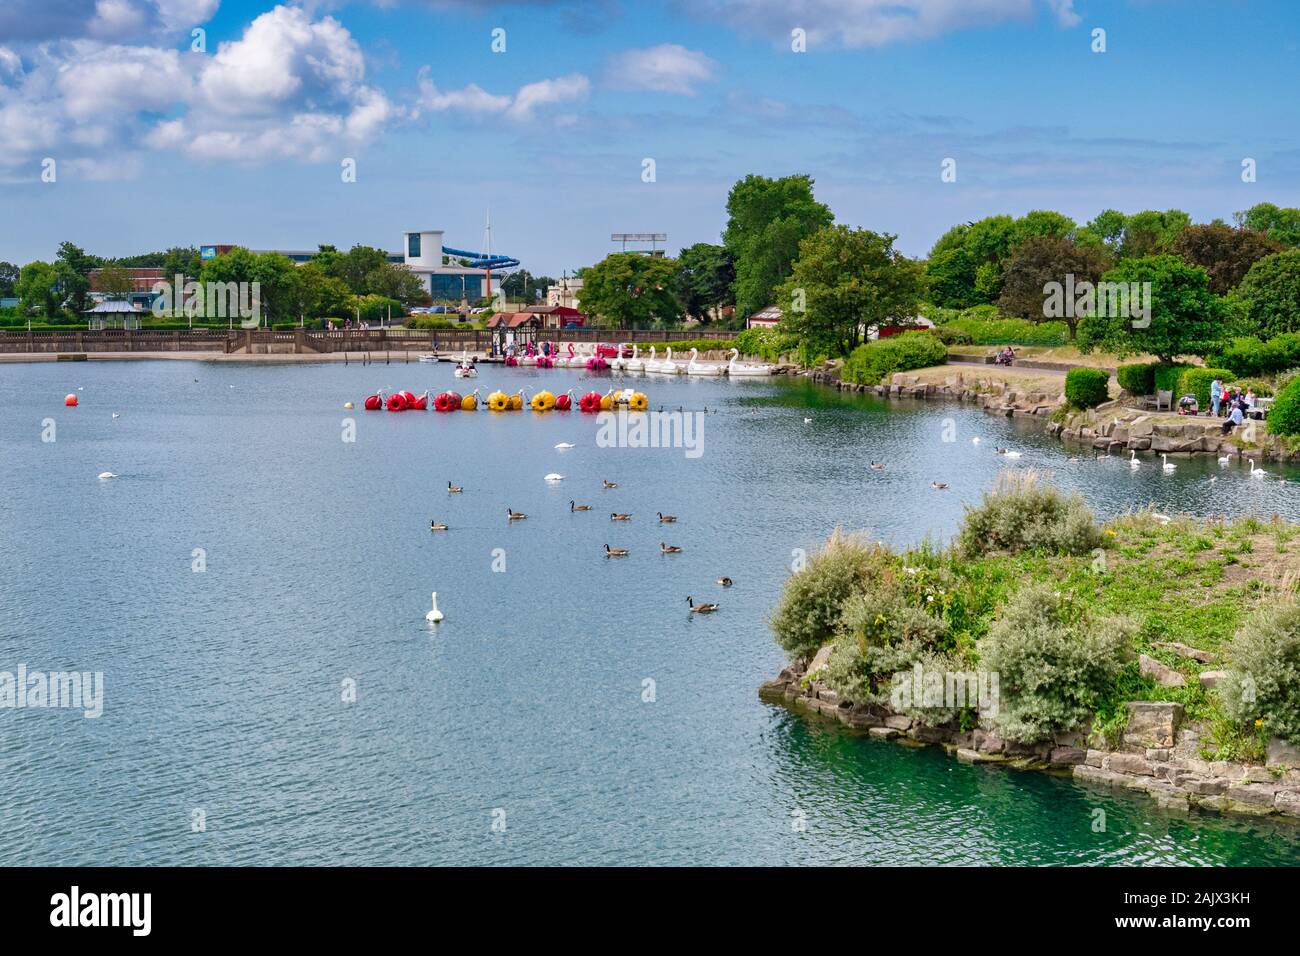 14 Luglio 2019: Southport, Merseyside, Regno Unito - lago marino, le gite in barca sul lago con oche e cigni, imbarcazioni da diporto, vacanzieri a piedi attorno al sole Foto Stock